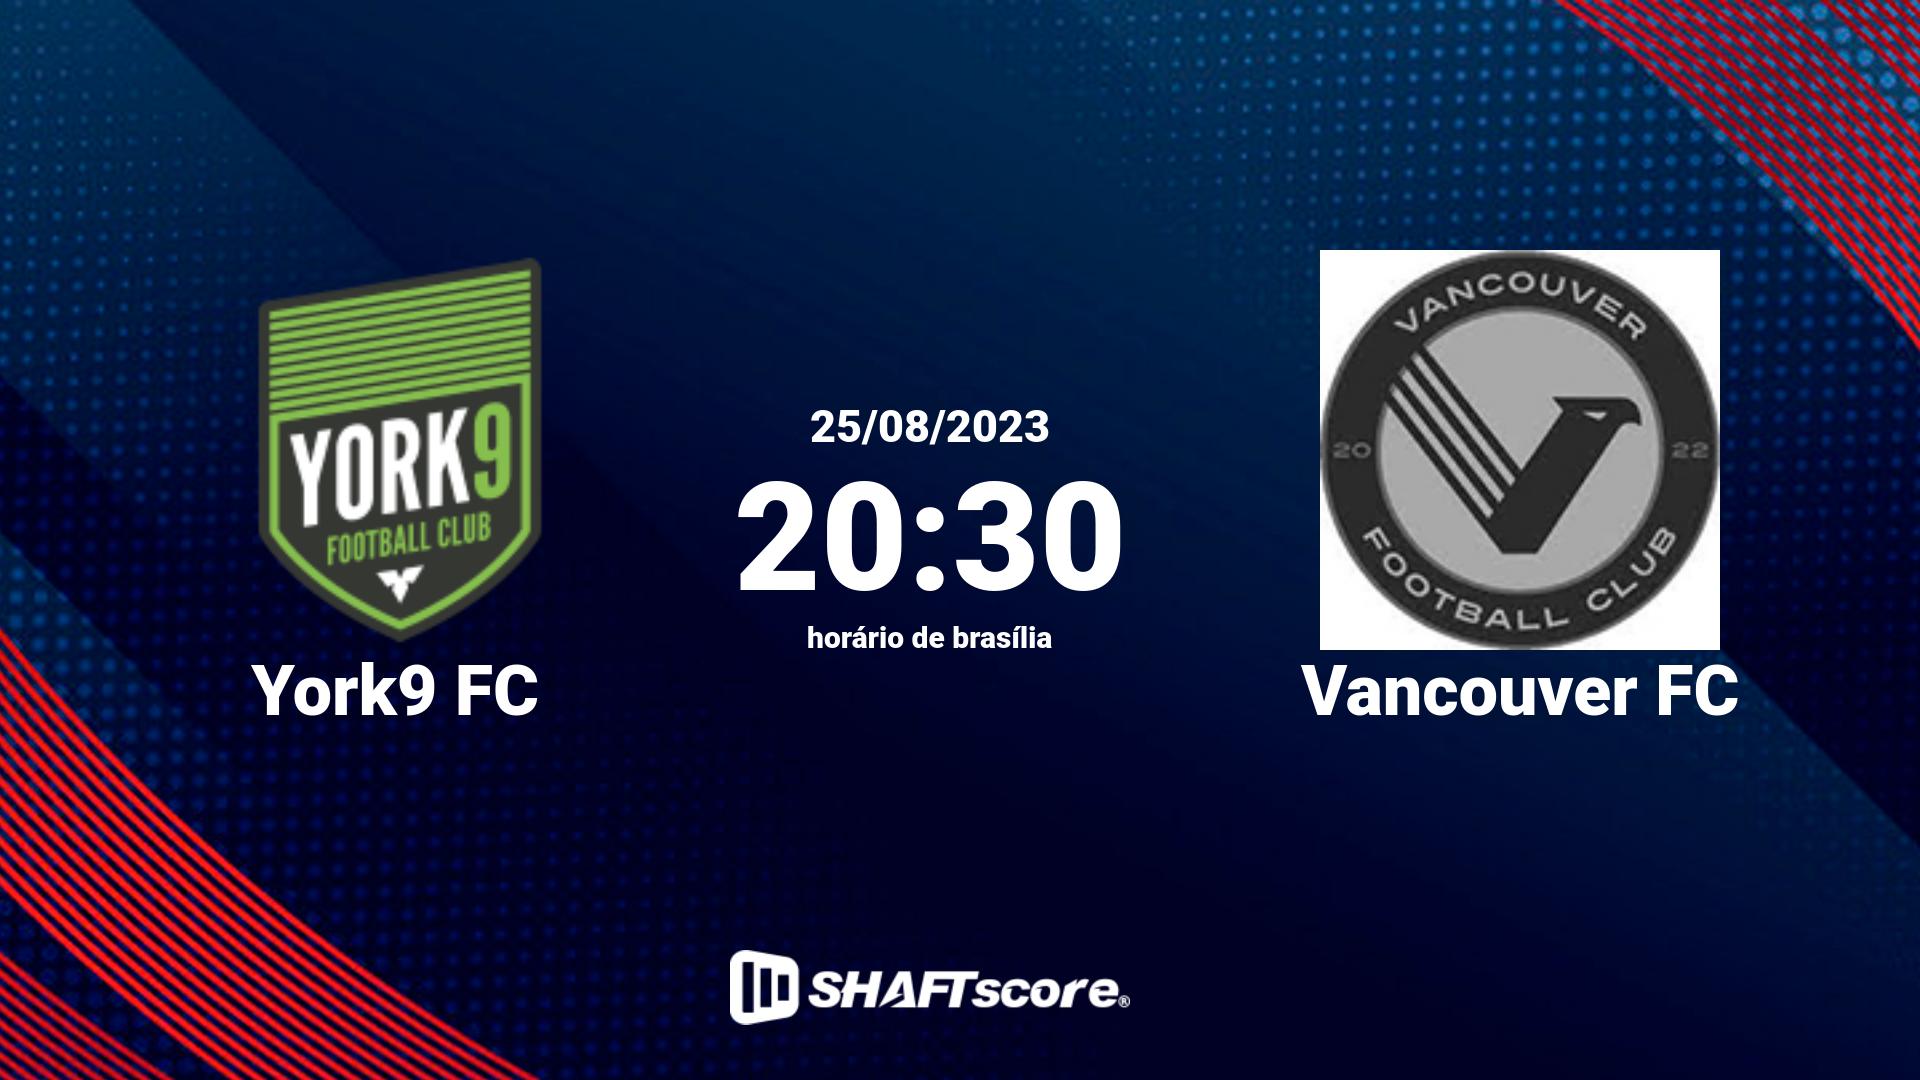 Estatísticas do jogo York9 FC vs Vancouver FC 25.08 20:30